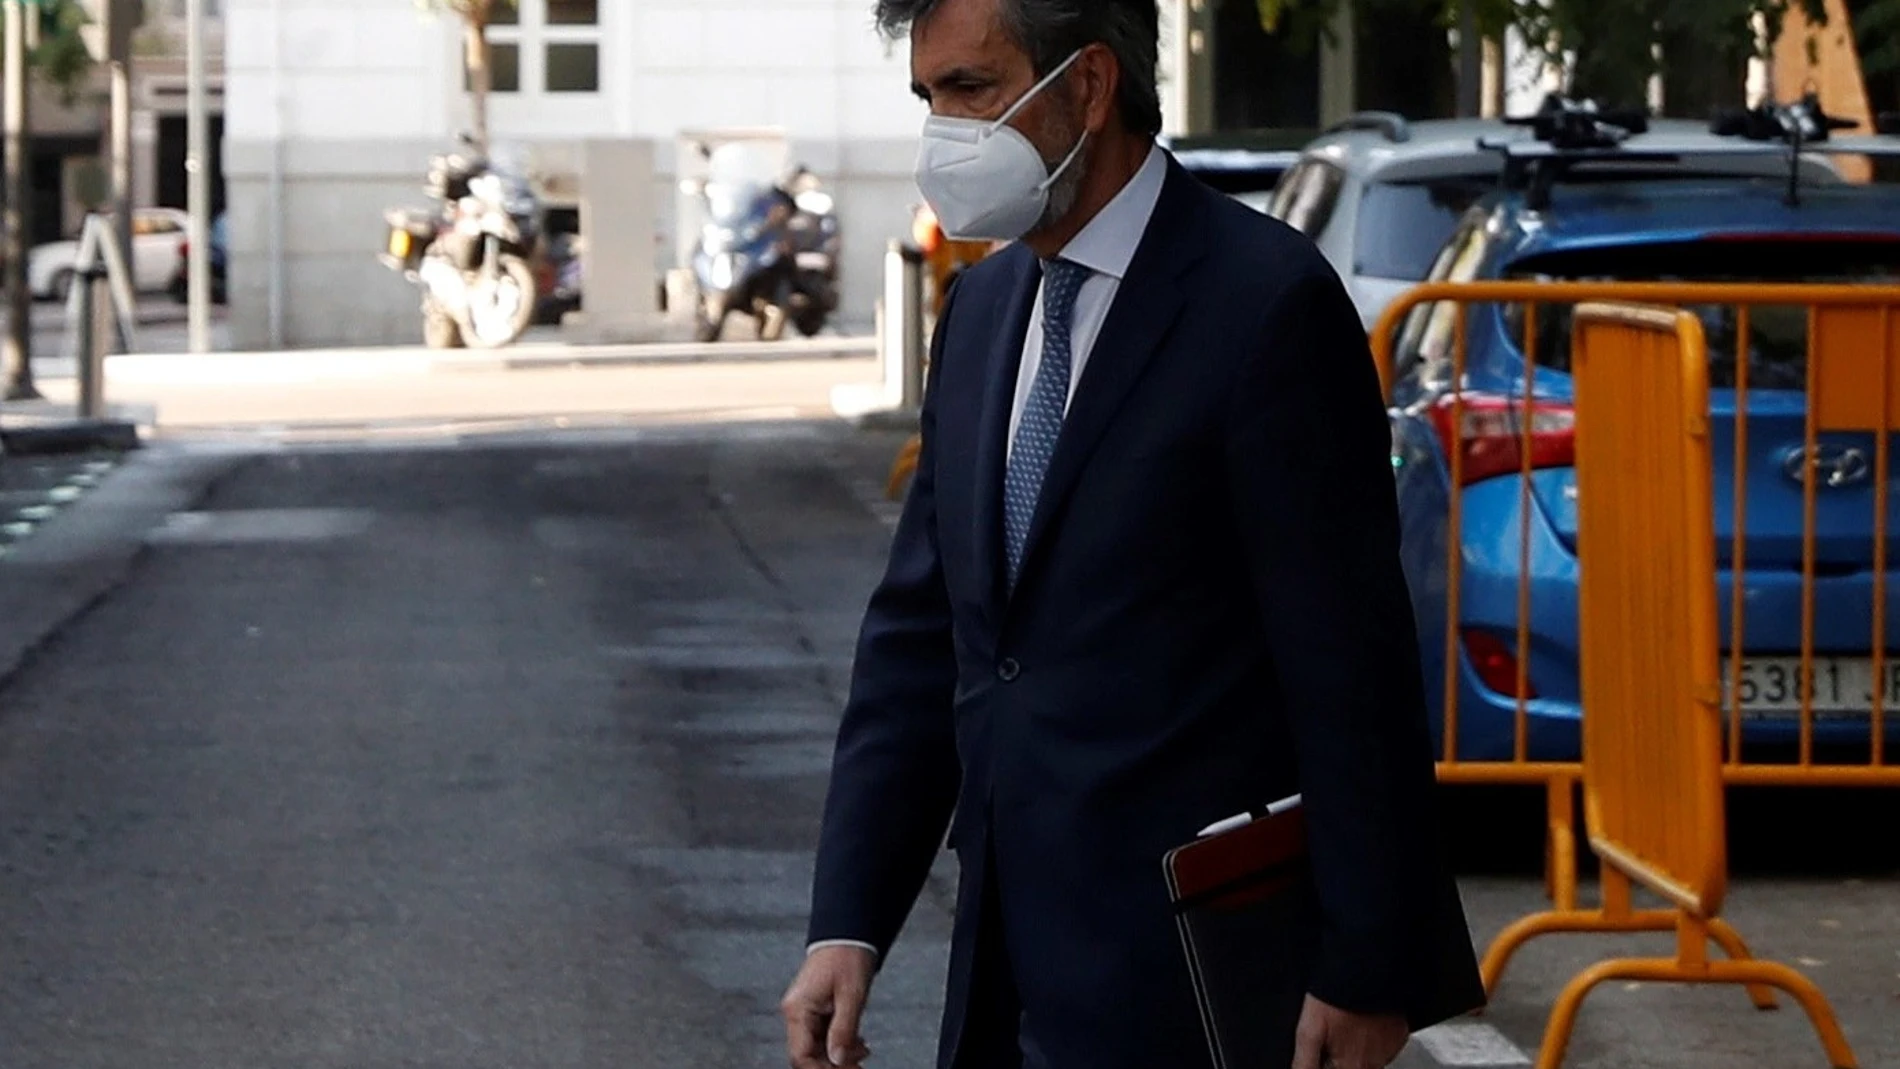 El presidente del Consejo General del Poder Judicial (CGPJ), Carlos Lesmes, a su llegada este miércoles a la sede del CGPJ, institución que afronta una decena de nombramientos, seis de ellos del Tribunal Supremo, en medio de la polémica sobre la ausencia del rey en Barcelona la semana pasada.